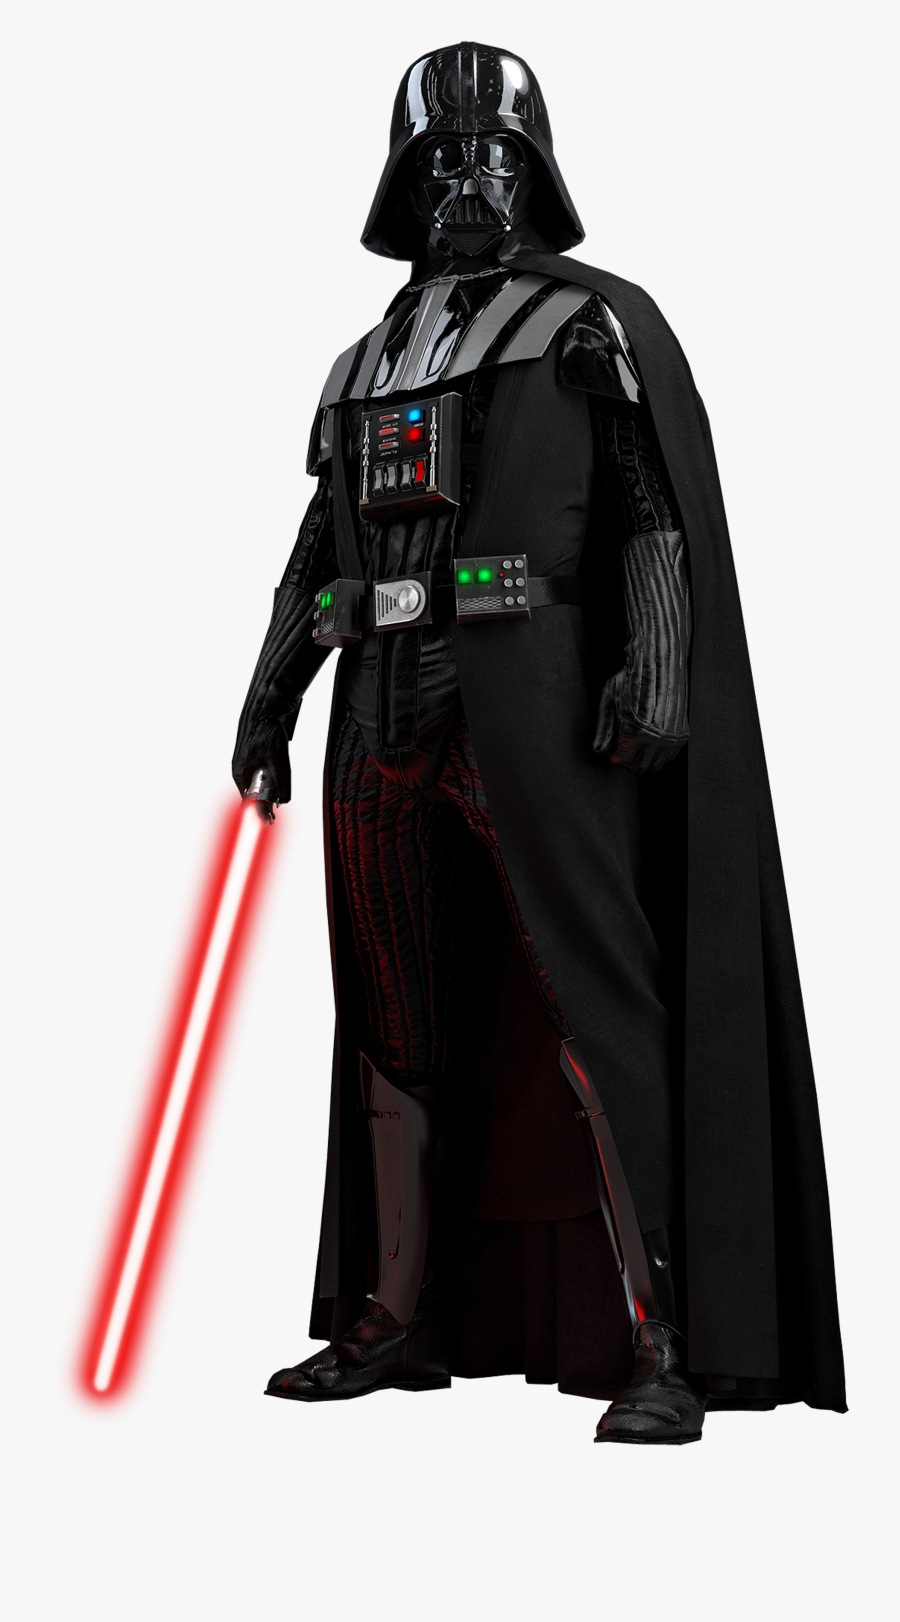 Anakin Skywalker Minecraft Skin - Star Wars Darth Vader Png, Transparent Clipart